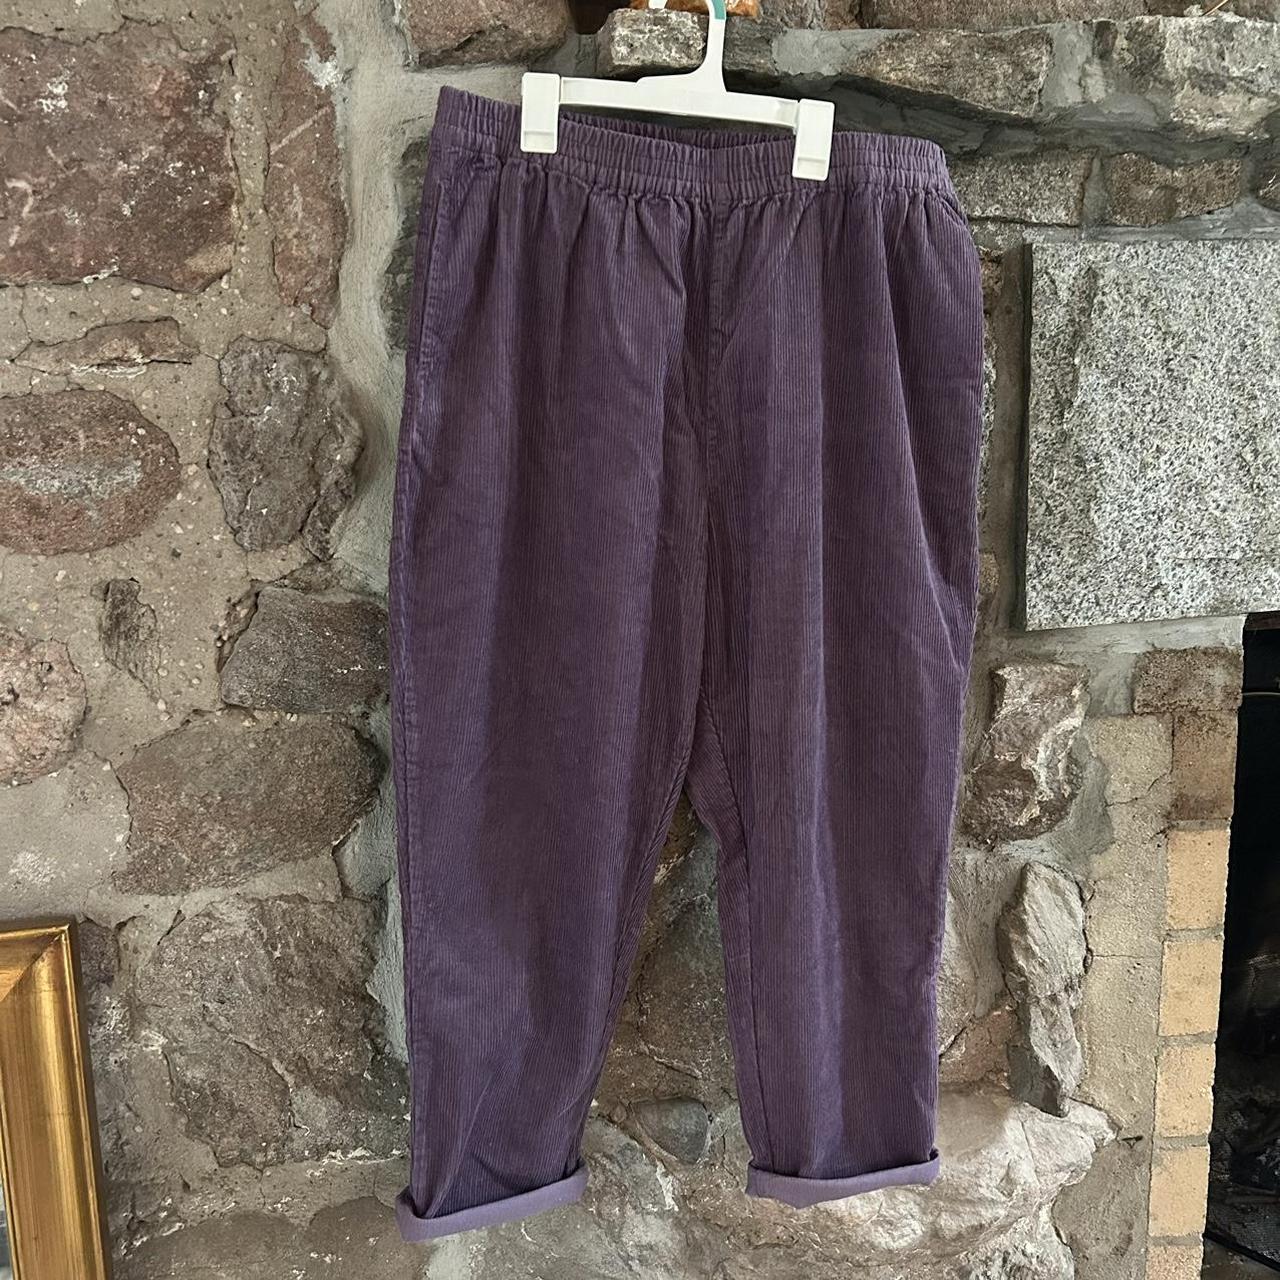 Lucy & Yak Billie Trousers in Ash Purple, size L I... - Depop